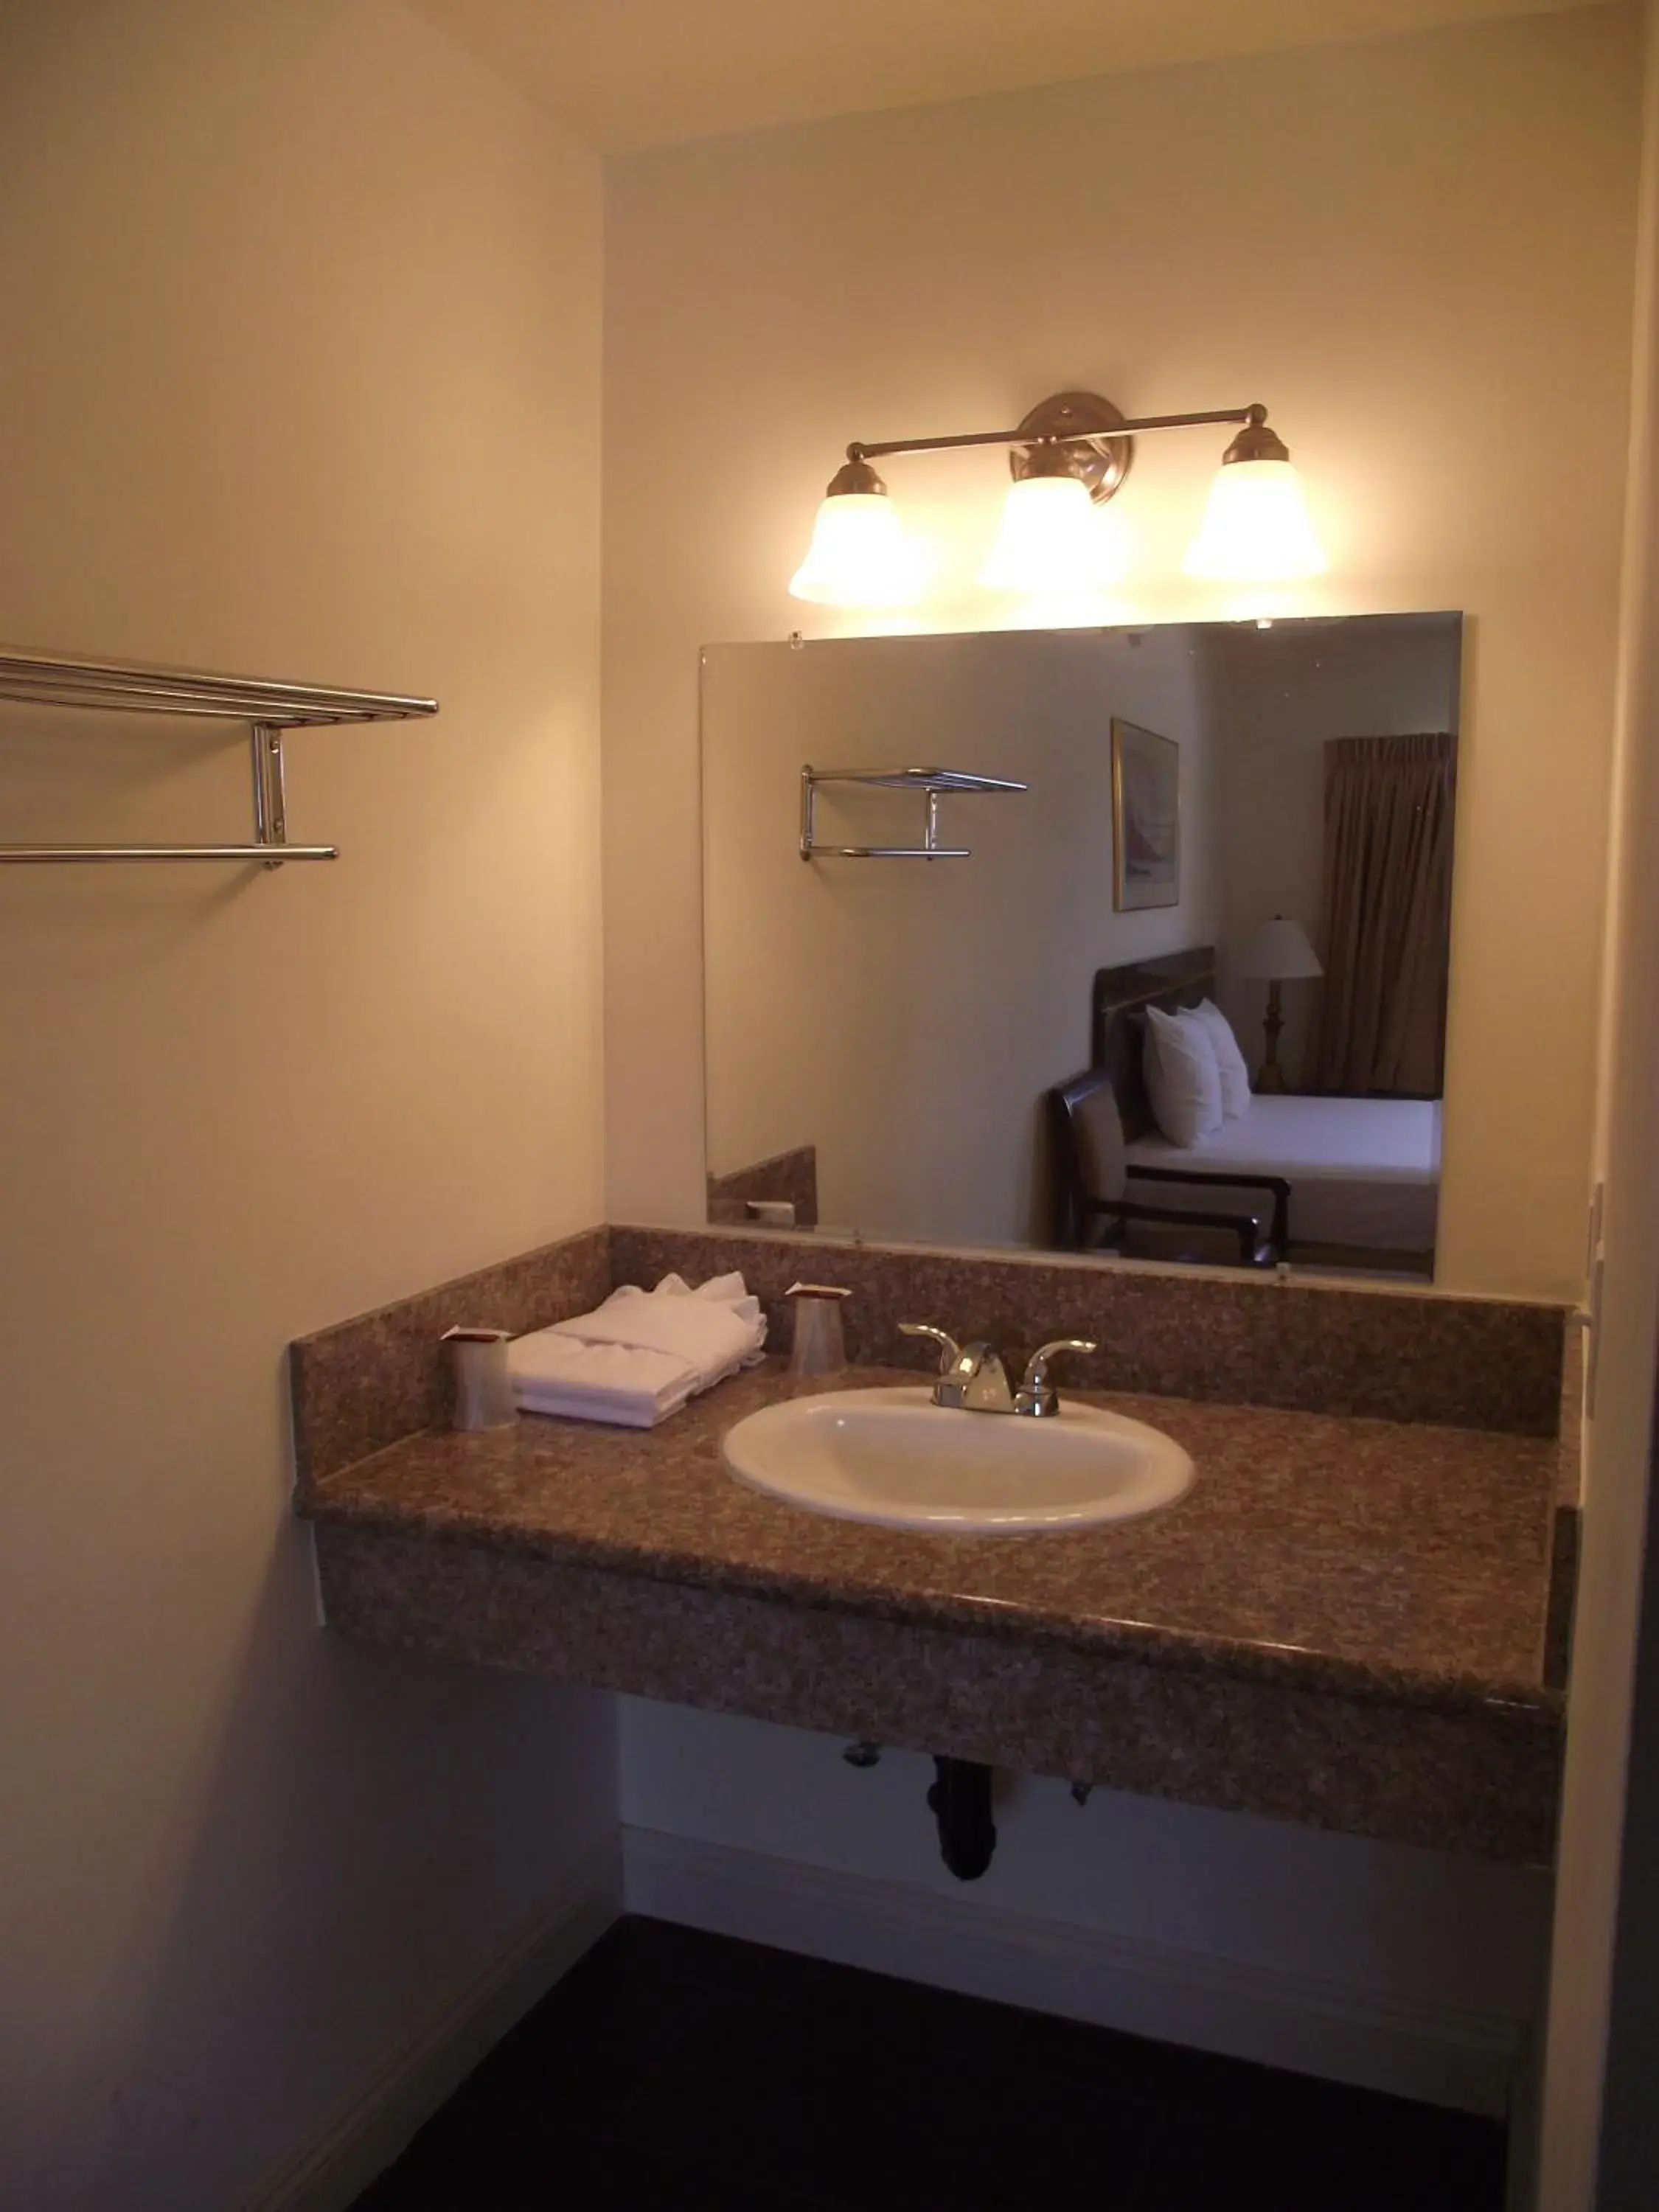 Area and facilities, Bathroom in SandPiper Motel - Los Angeles